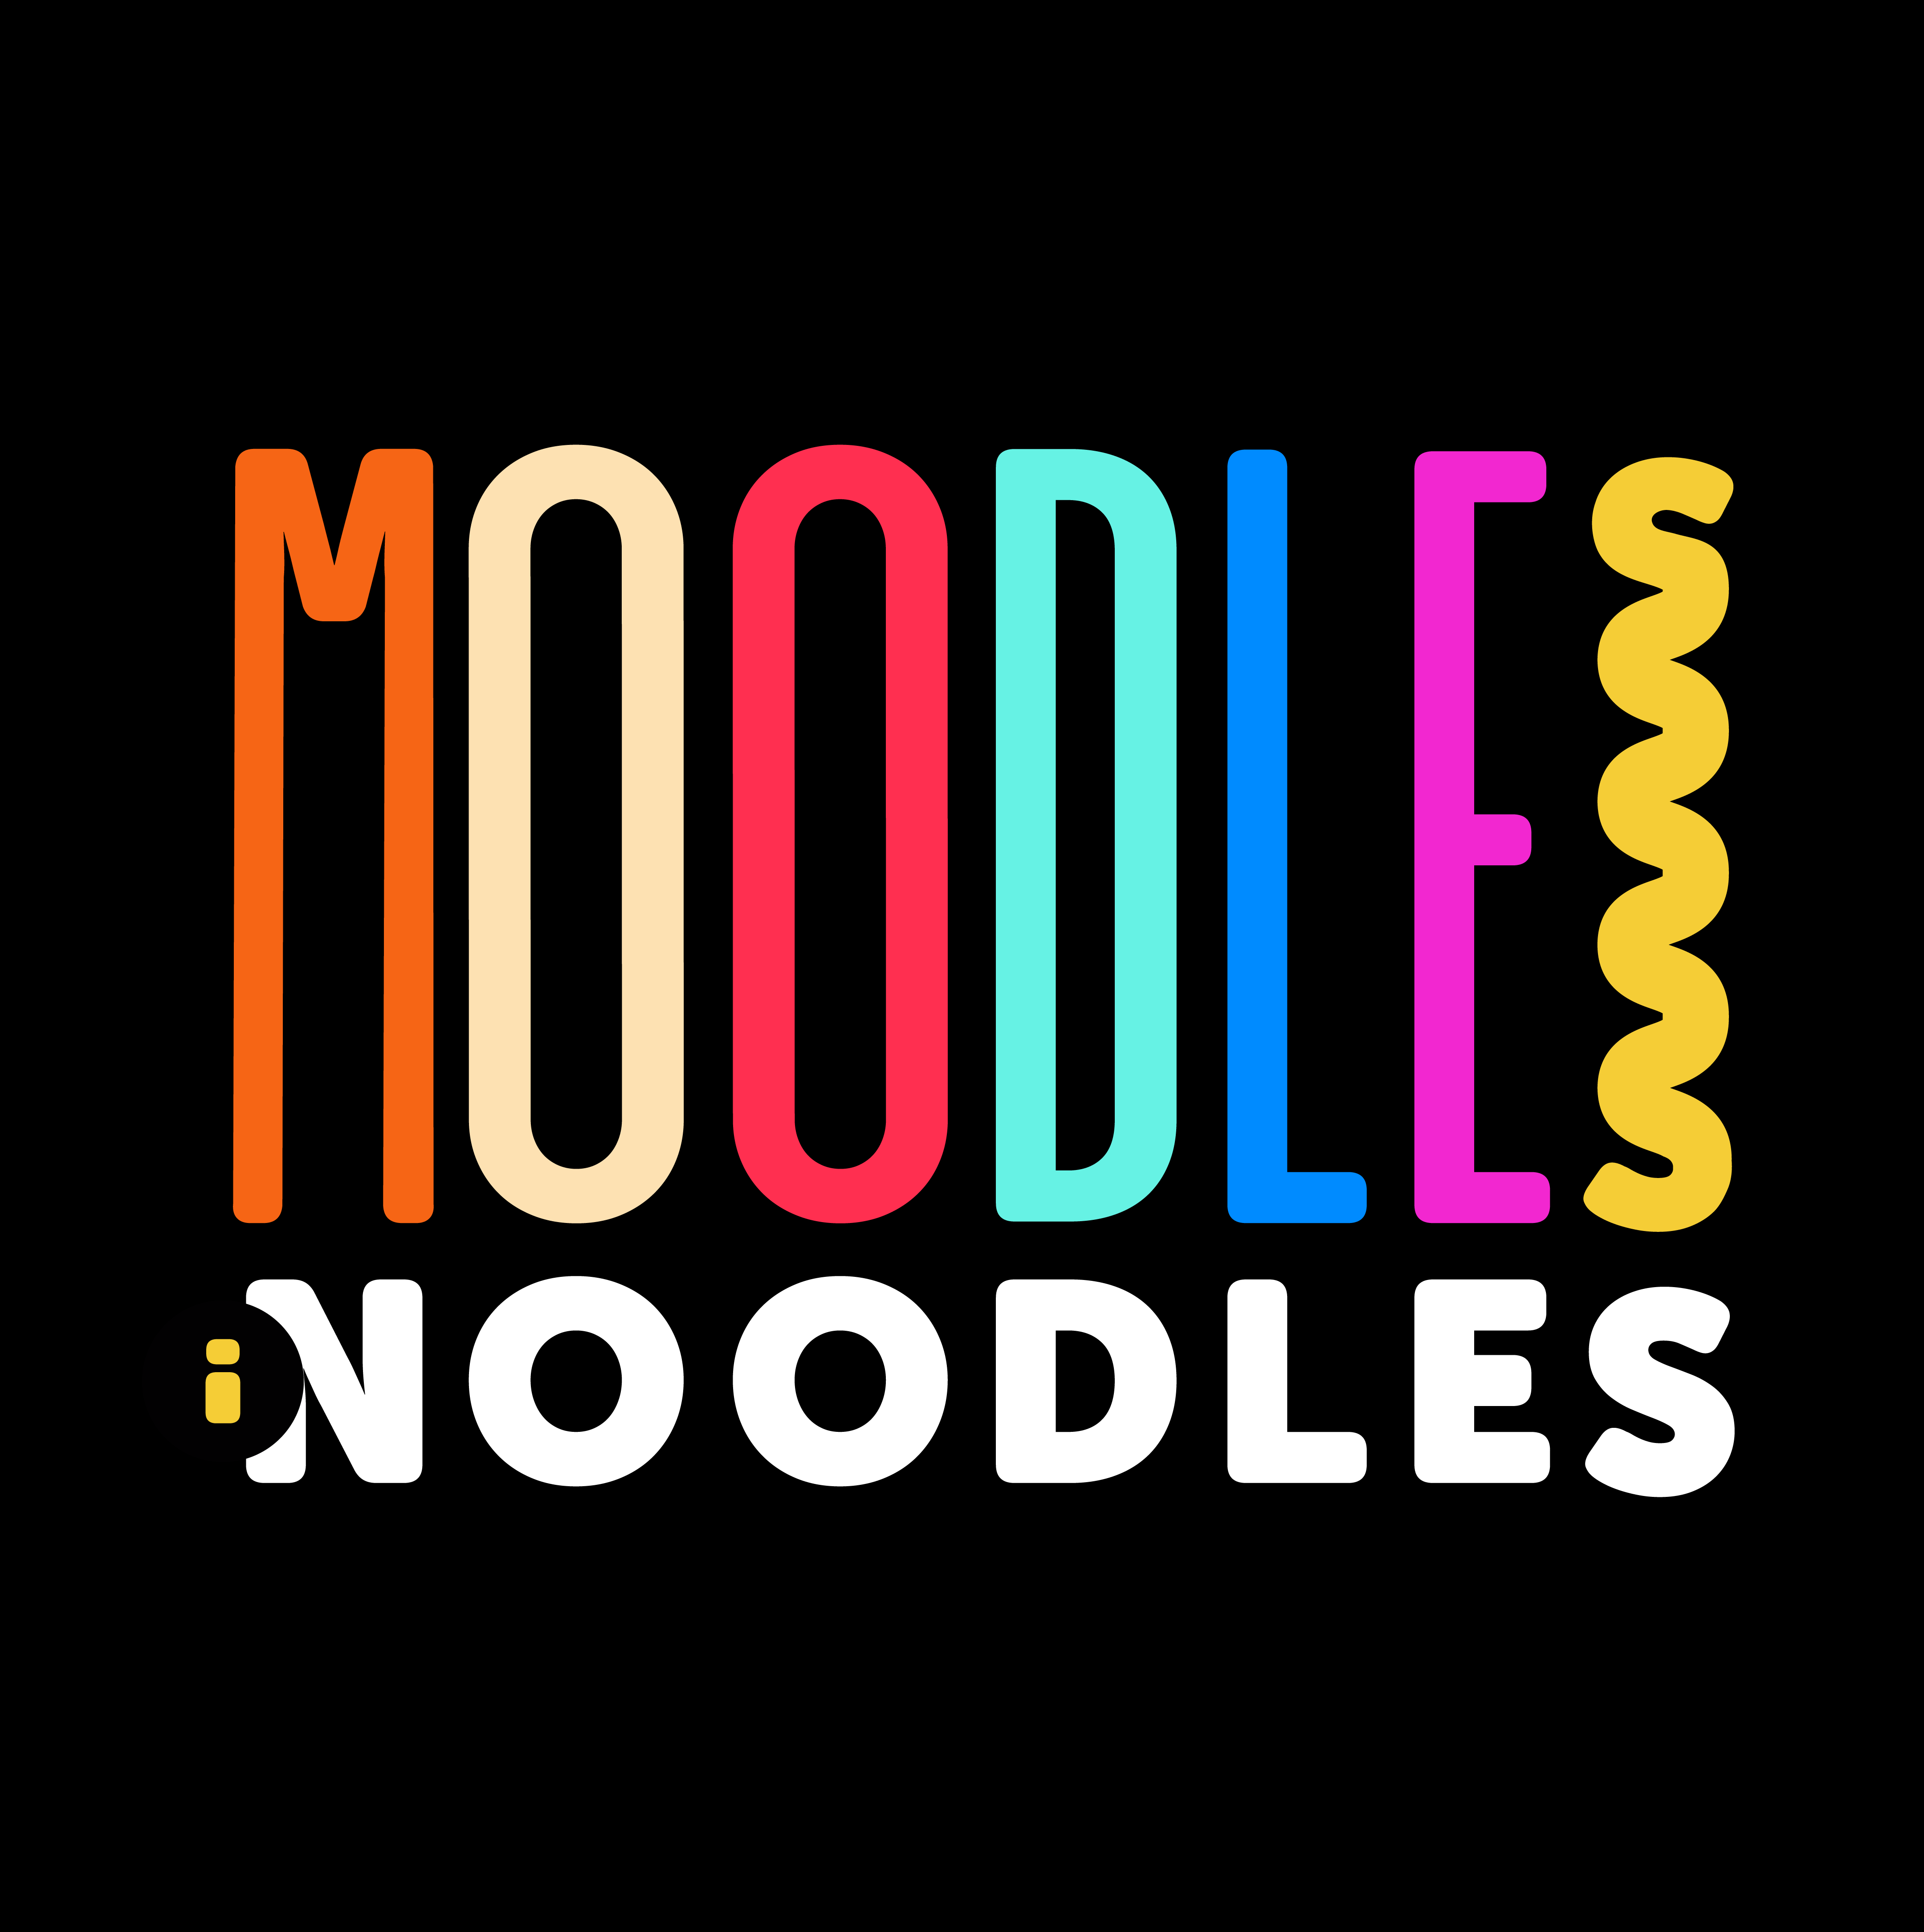 Moodles i Noodles